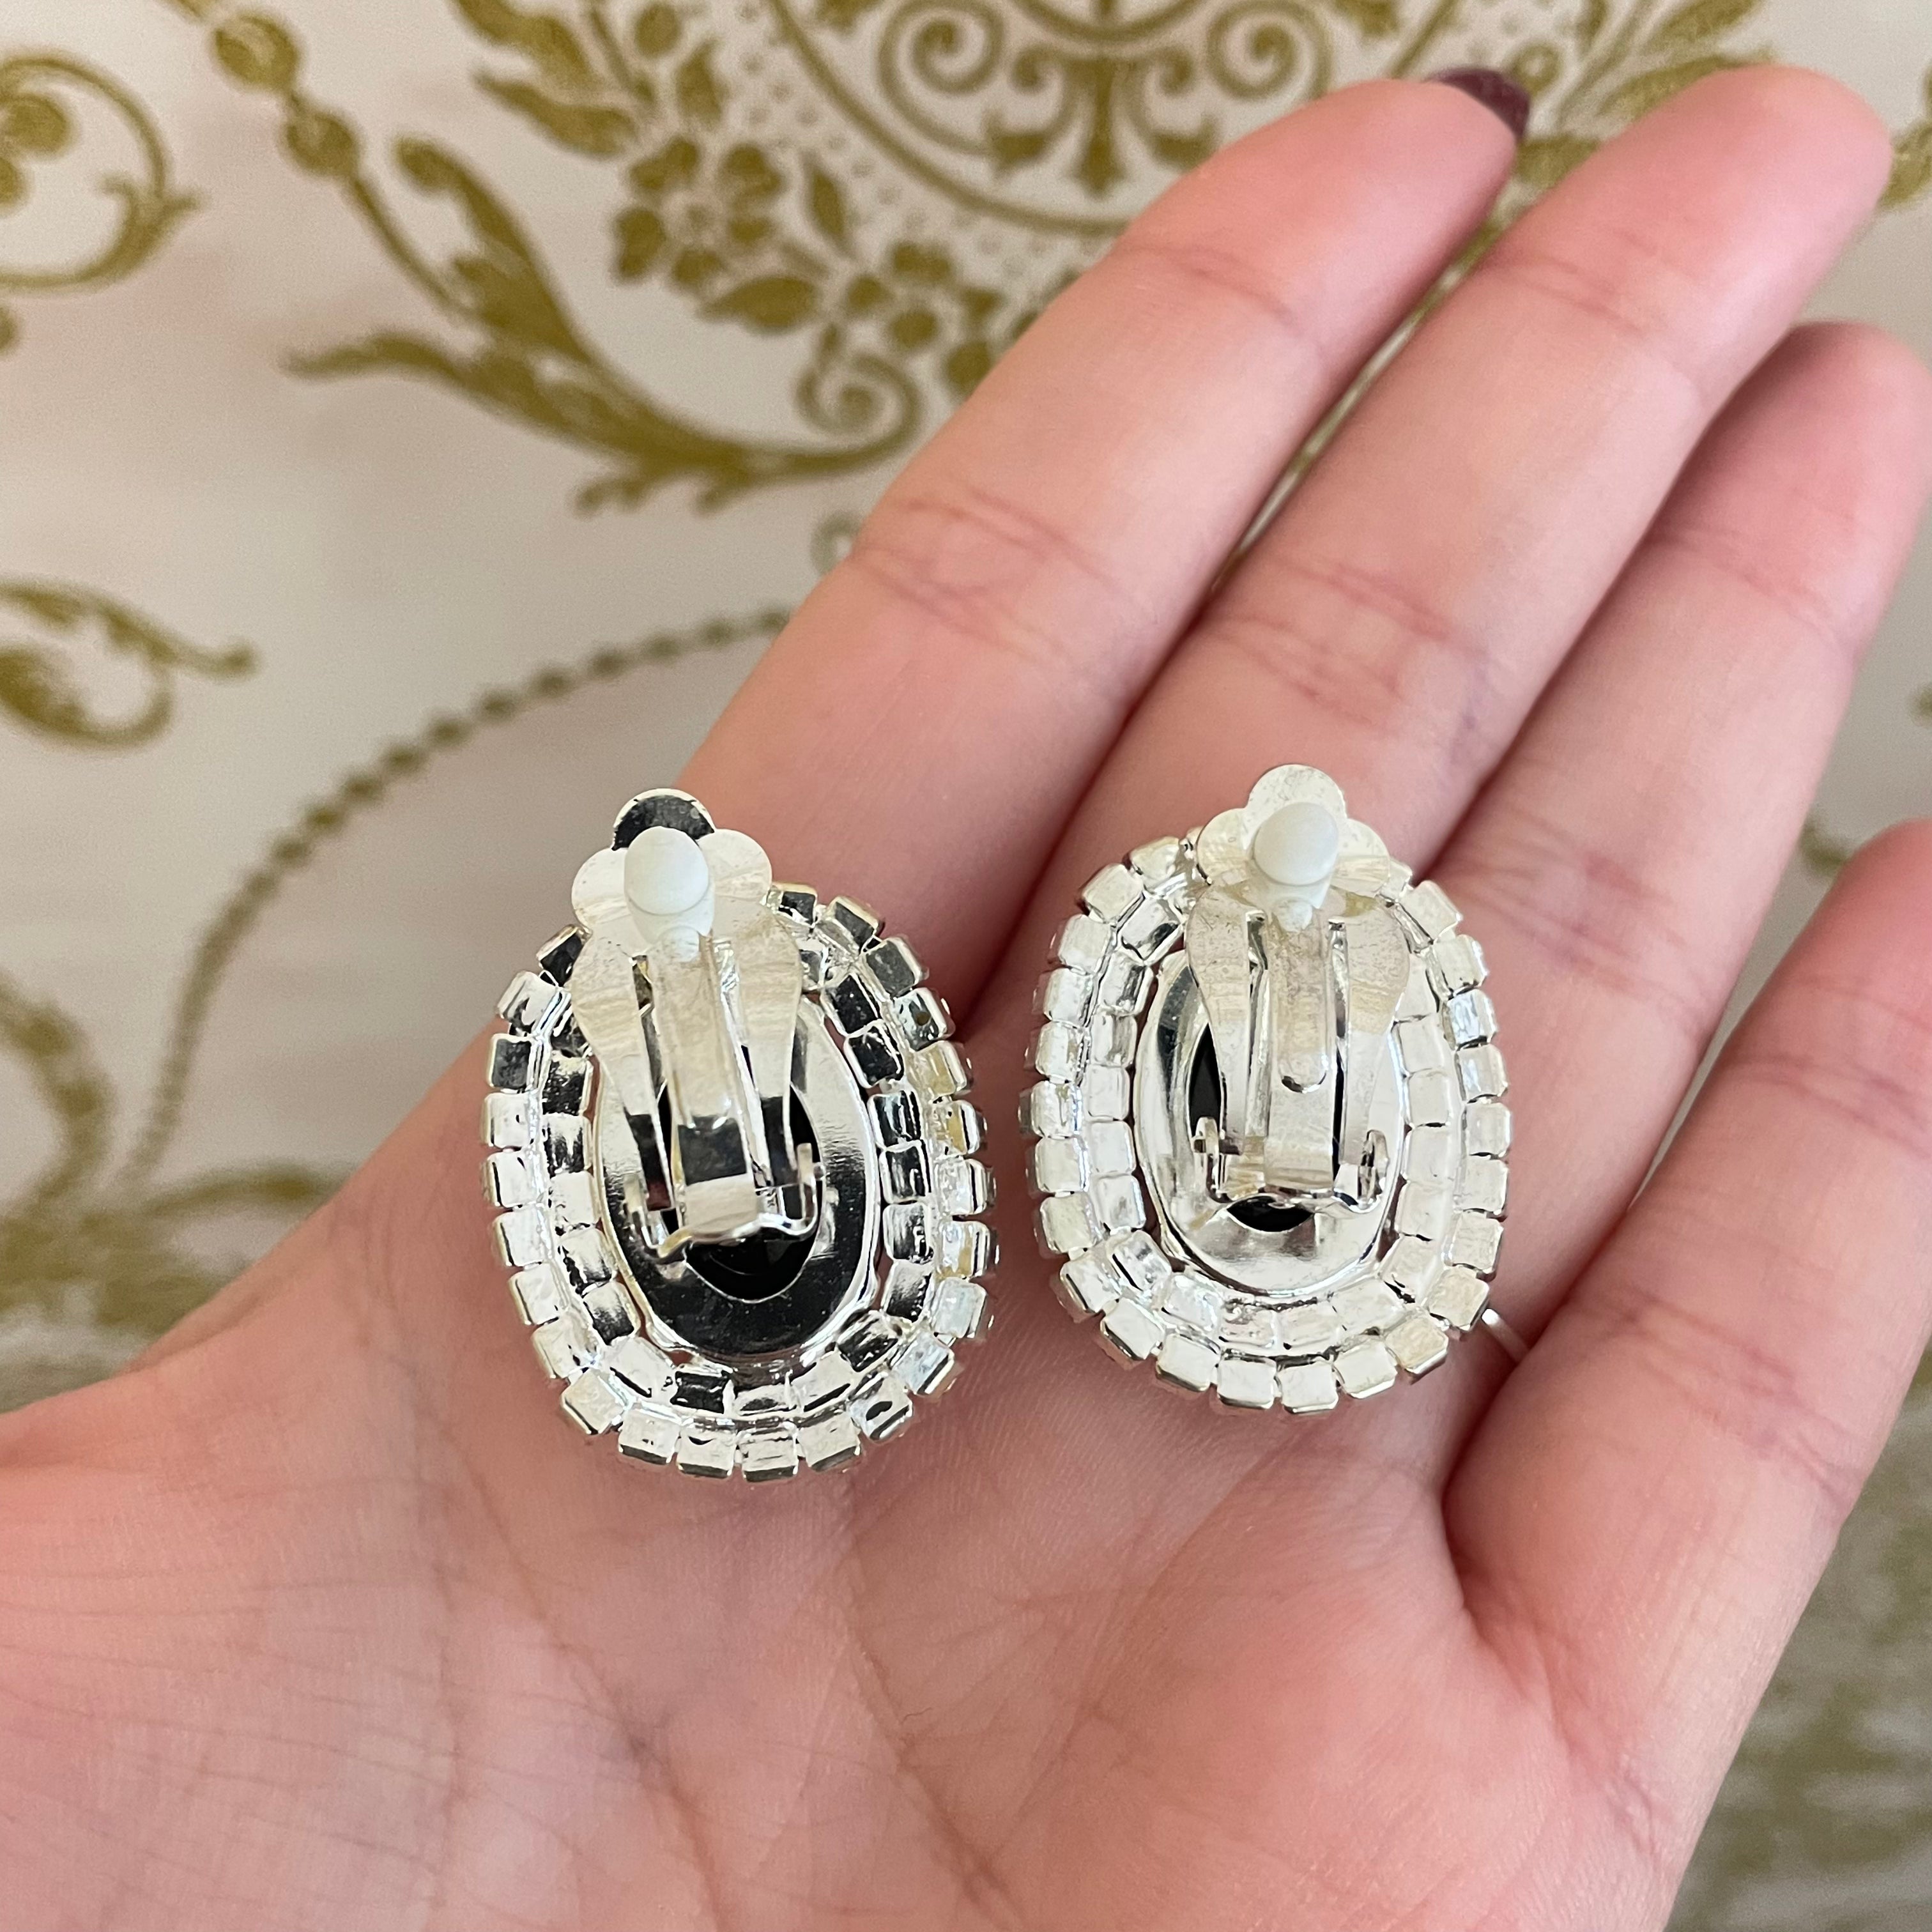 Black oval rhinestone clips earrings